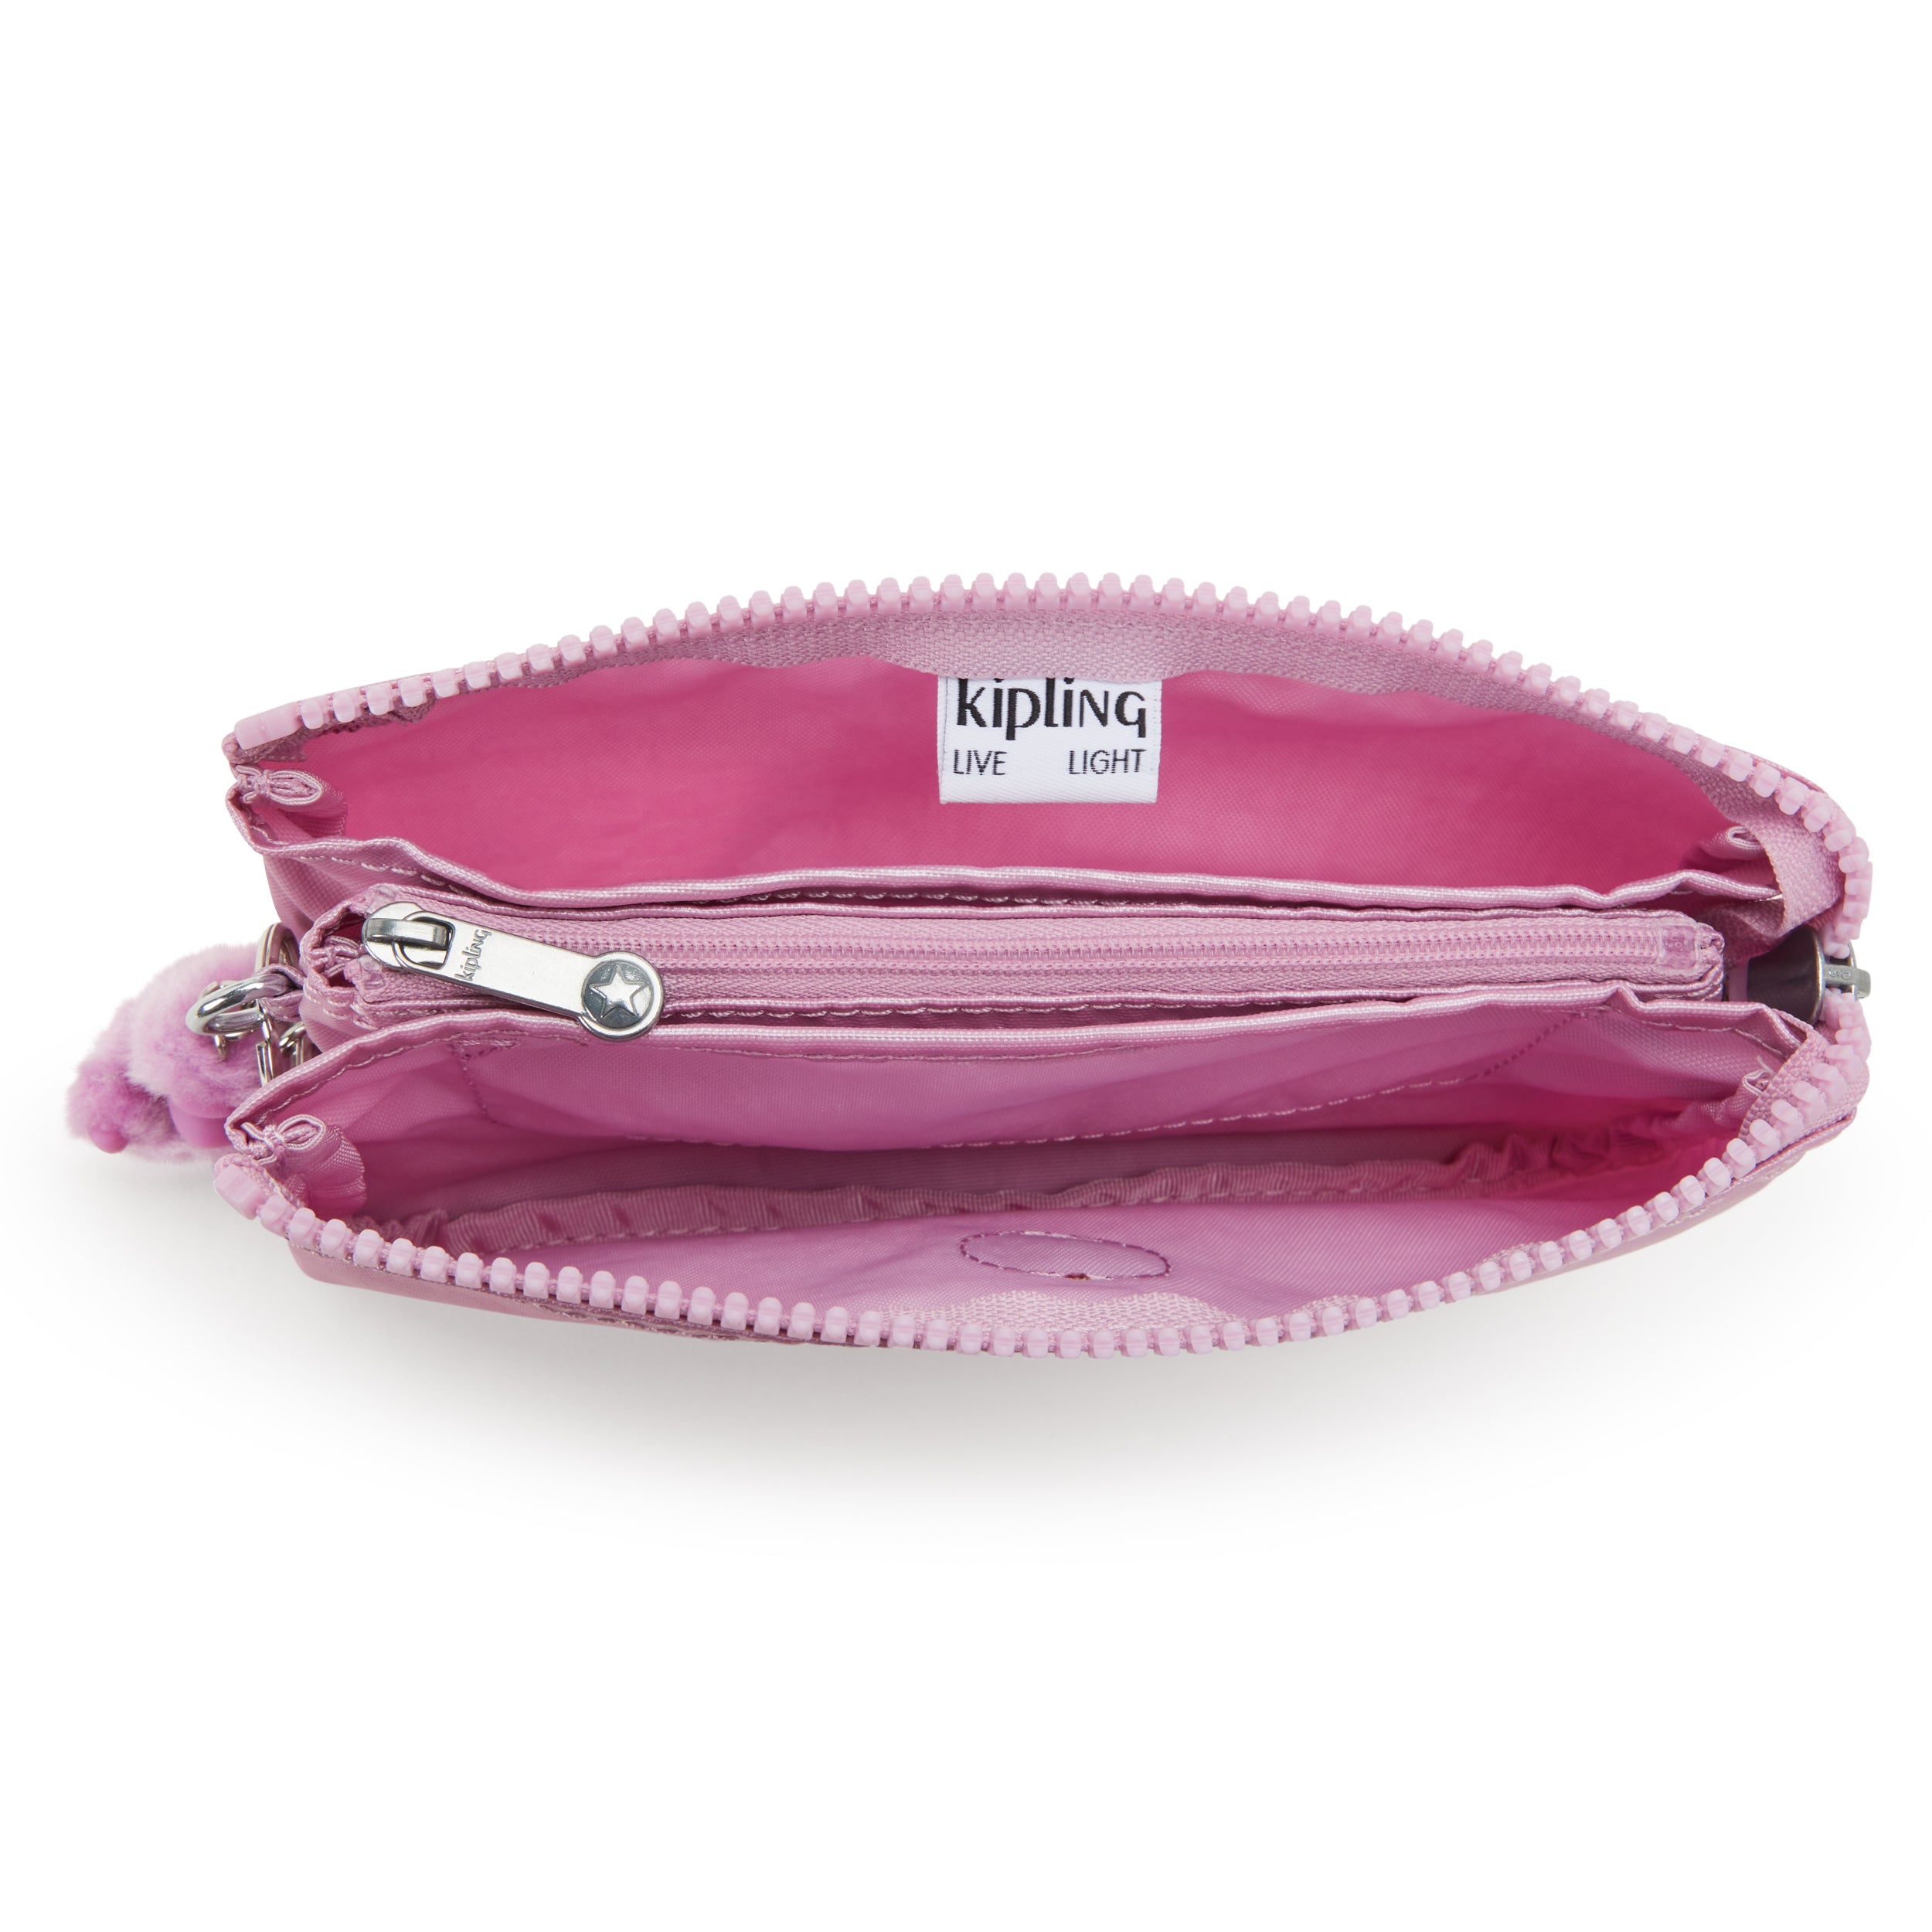 KIPLING-Creativity L-Large purse-Metallic Lilac-13093-F4D